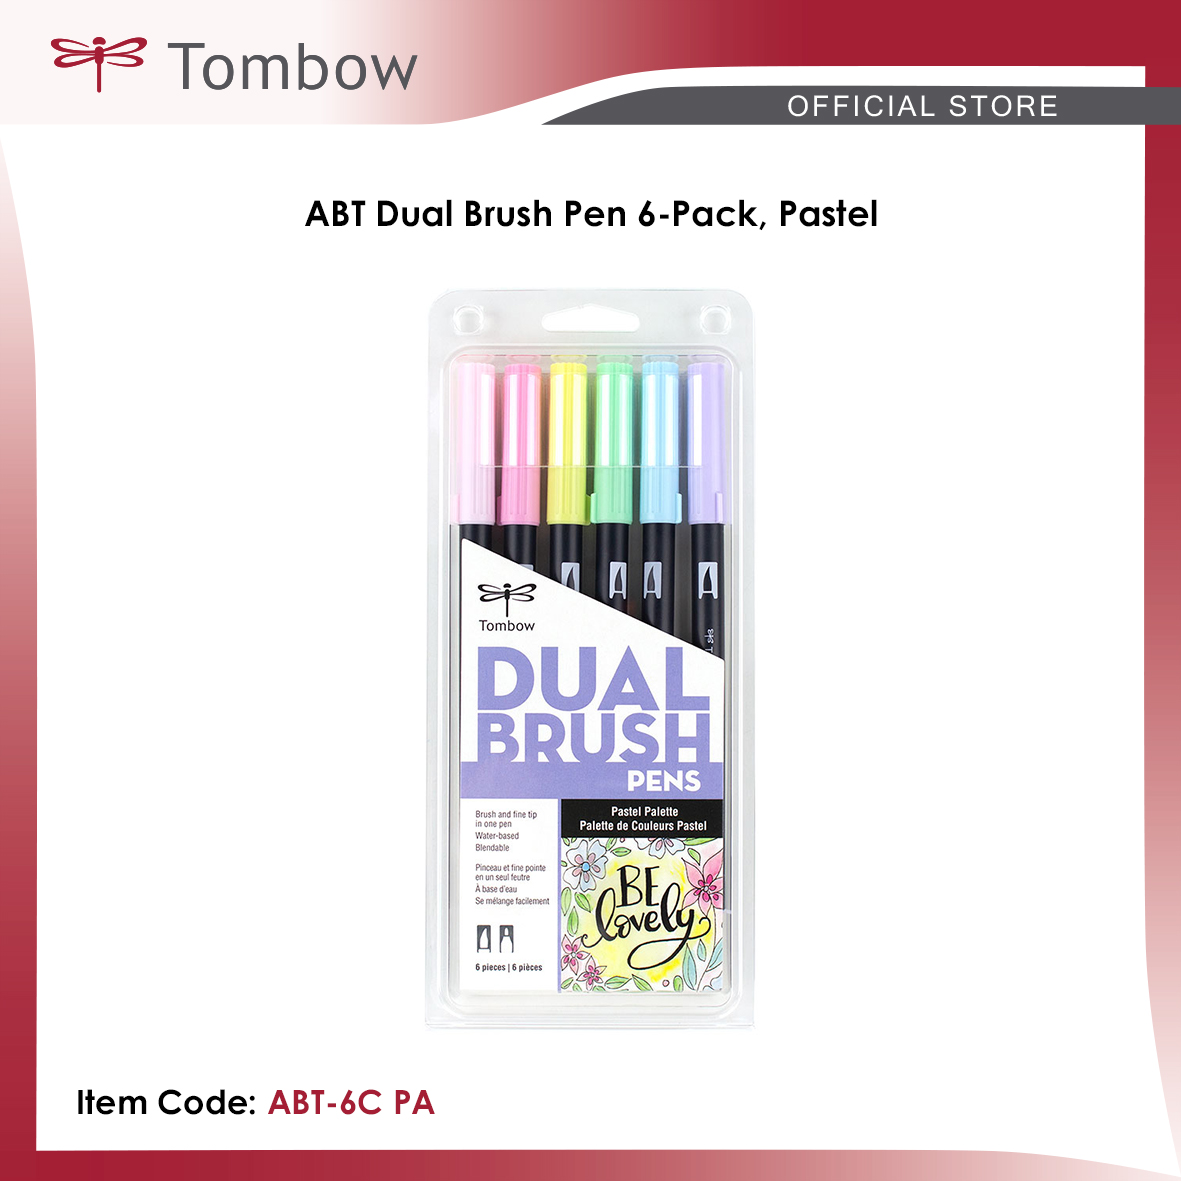 Tombow • Brush pen ABT dual brush pen set Pastel colours 6pcs